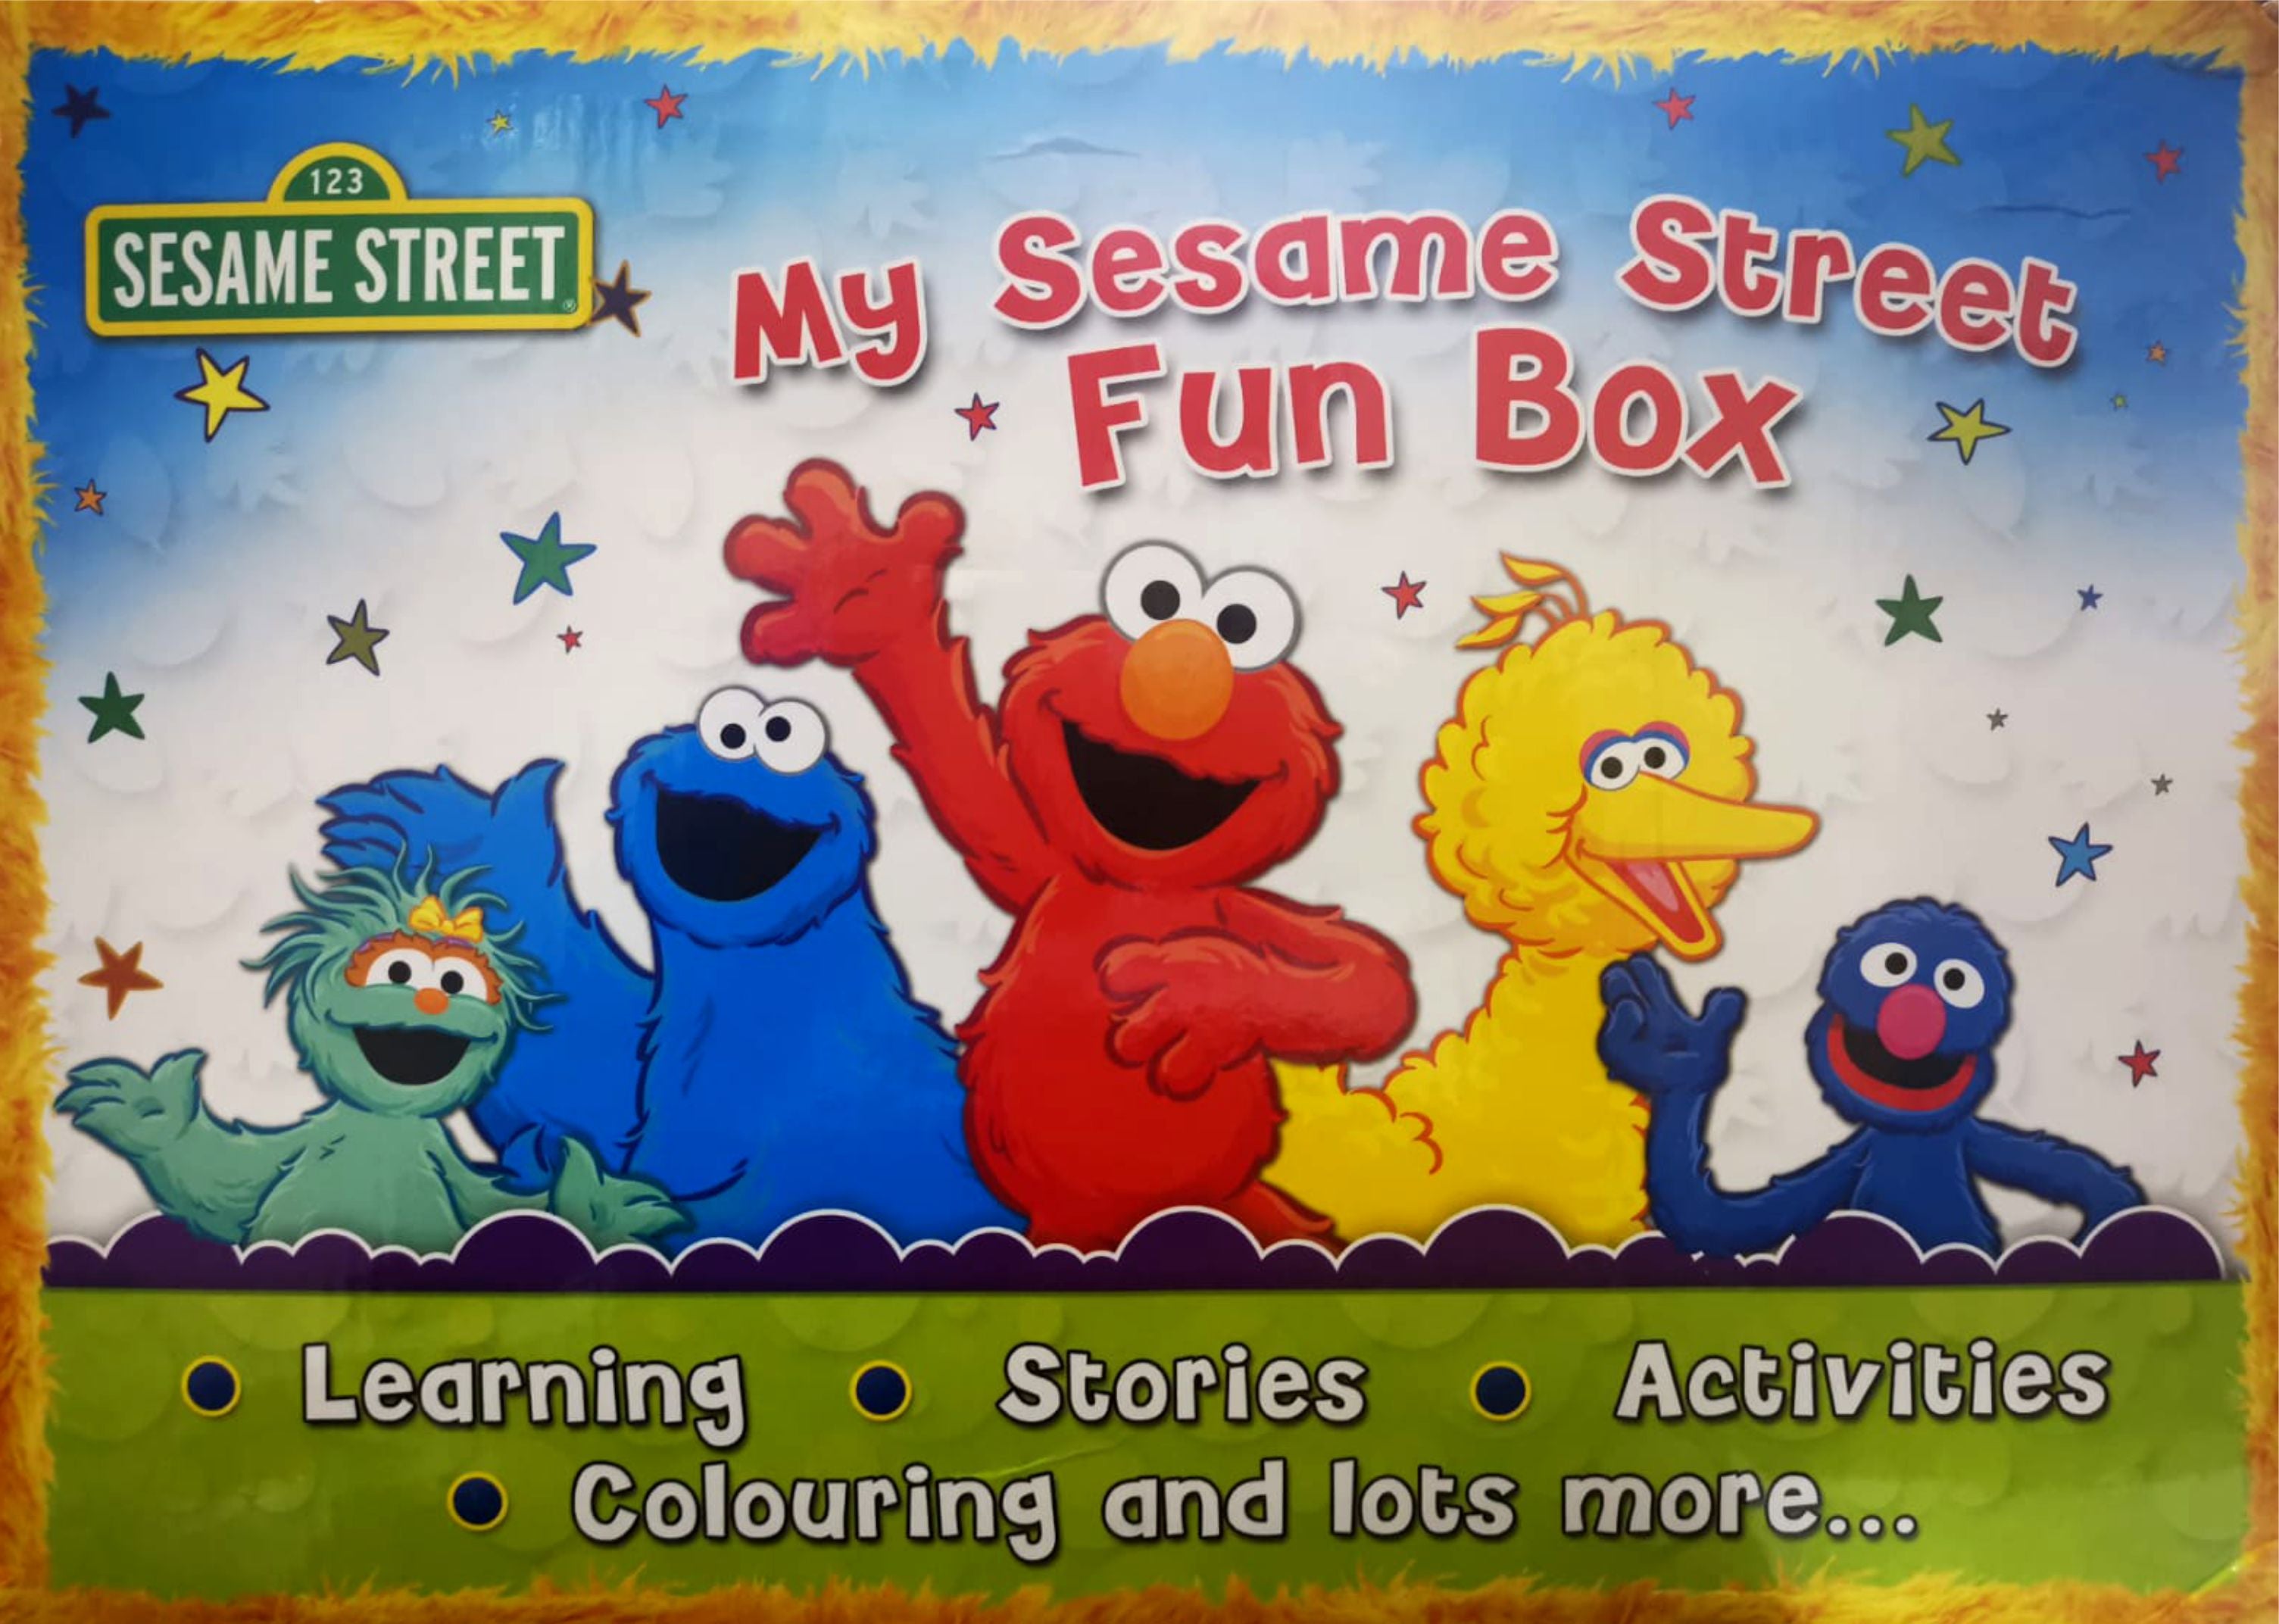 My Sesame Street Fun Box